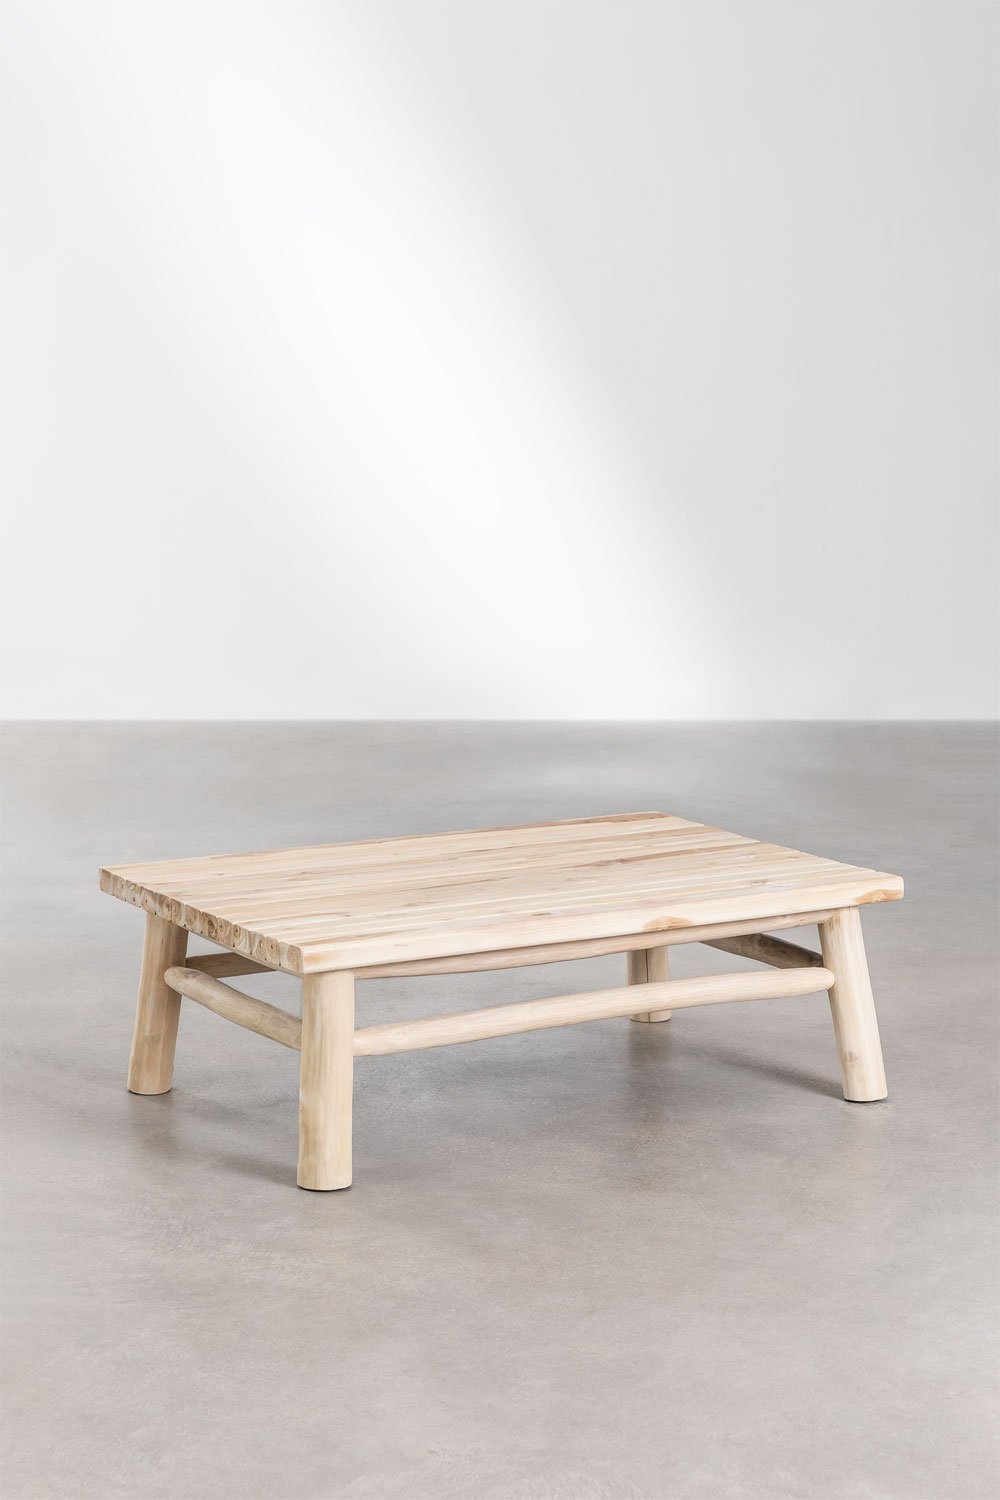 Table Basse Rectangulaire en Bois de Teck (120x80 cm) Narel, image de la galerie 1